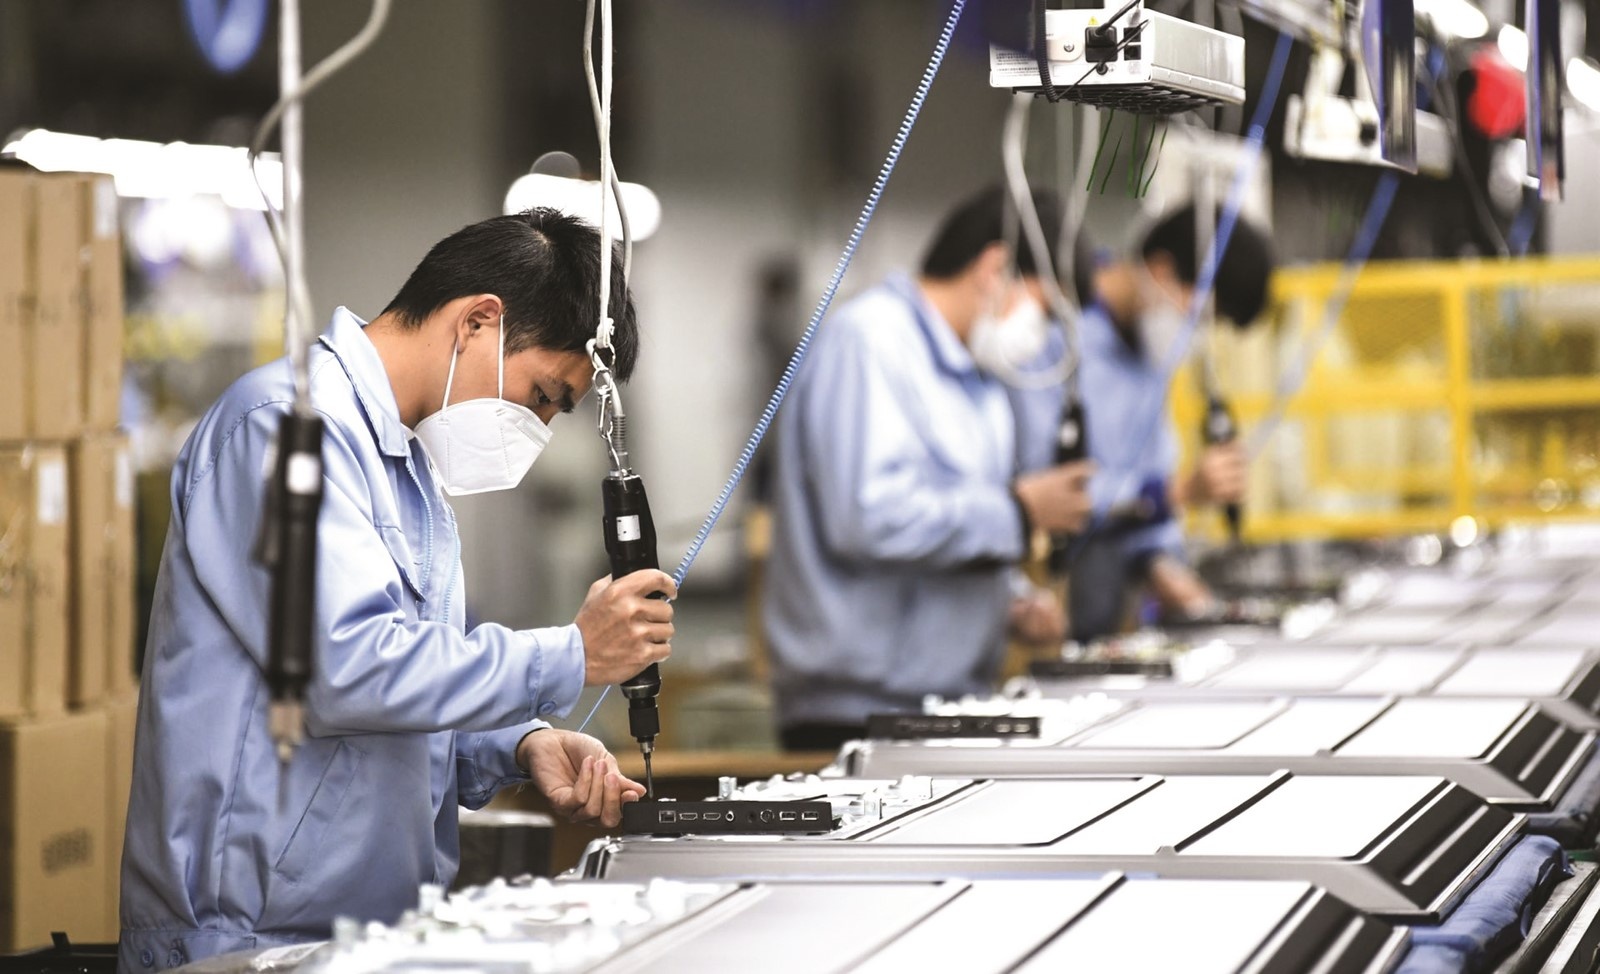 Thủ tướng Chính phủ ban hành Chỉ thị phục hồi sản xuất tại các khu vực sản xuất công nghiệp